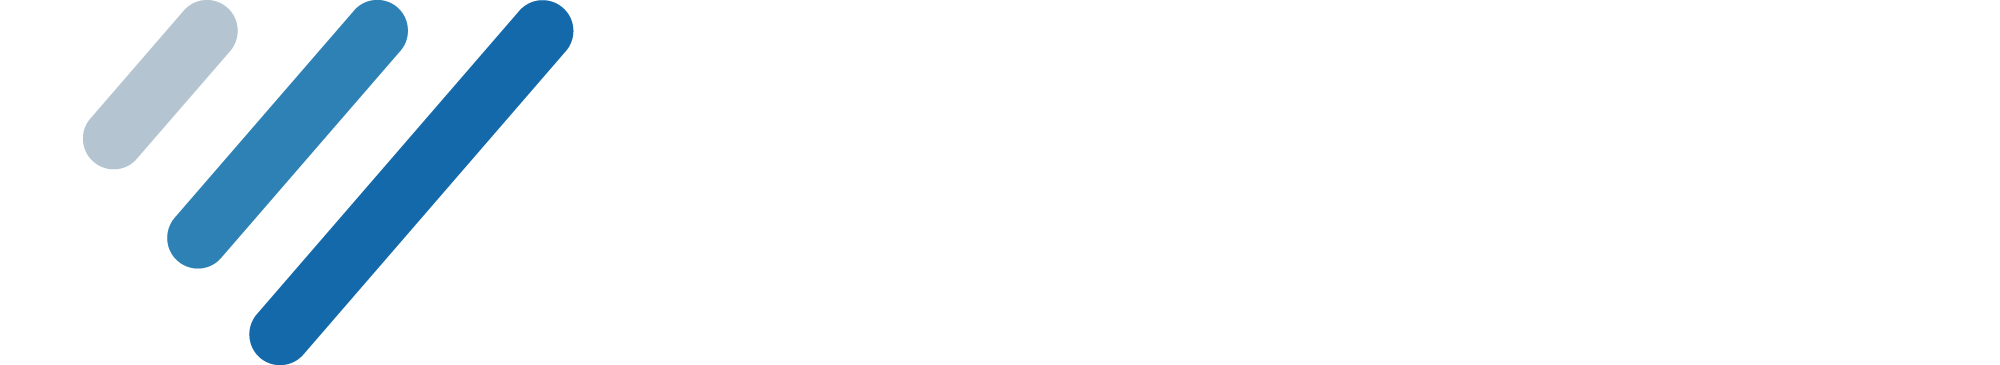 Values Identifier